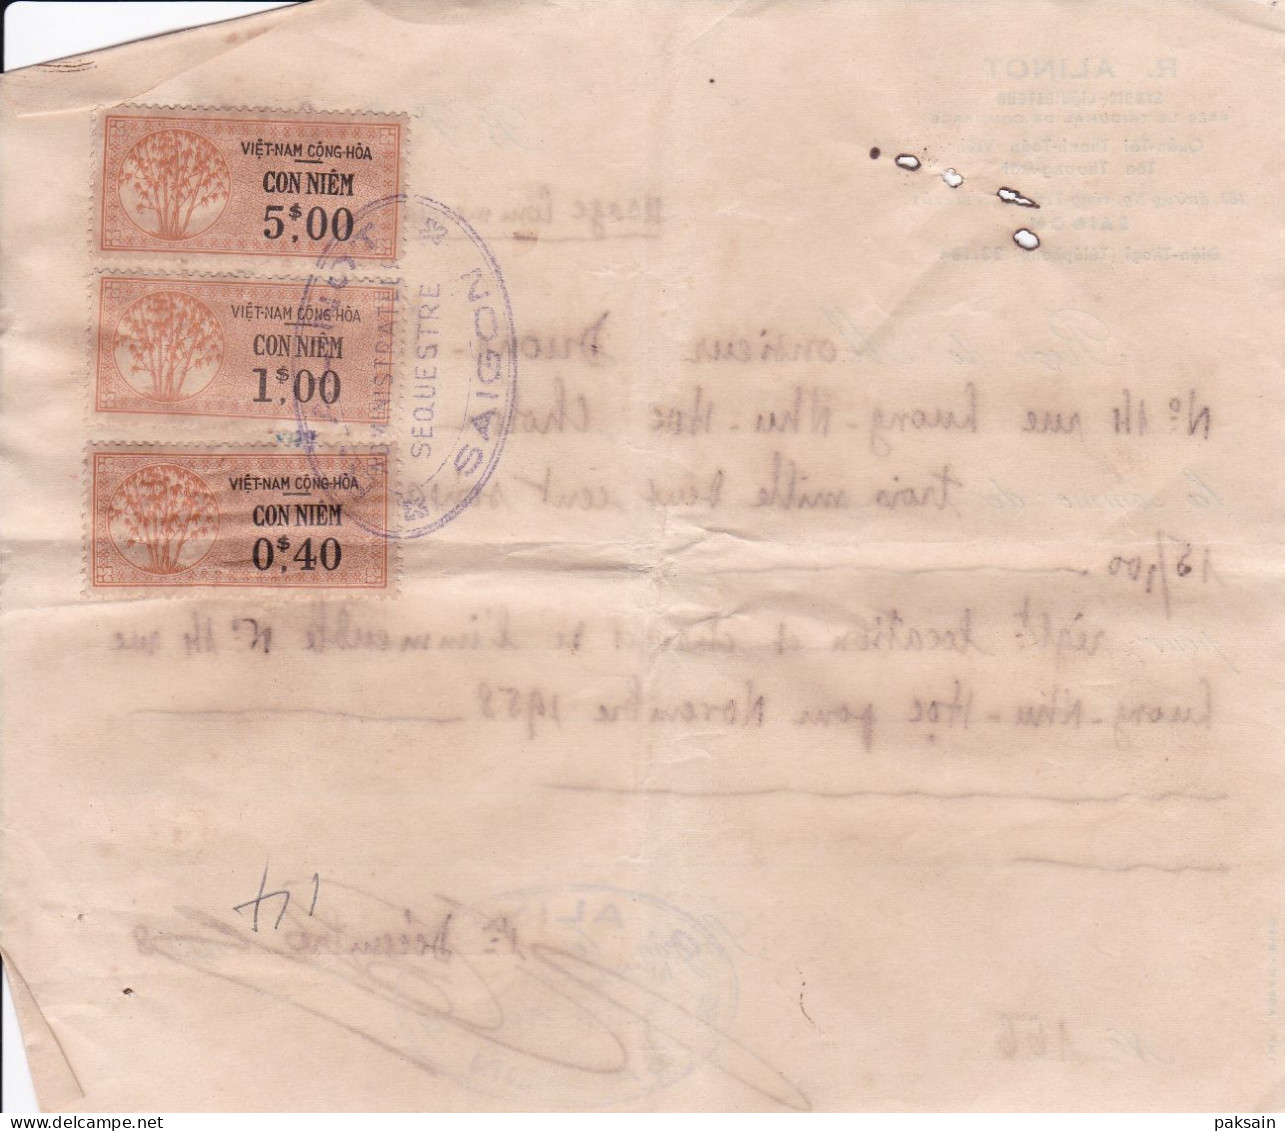 Vietnam Lot 9 quittances de Loyer avec timbres fiscaux en Piastre Cochinchine Saigon Cholon timbre fiscal Indochine